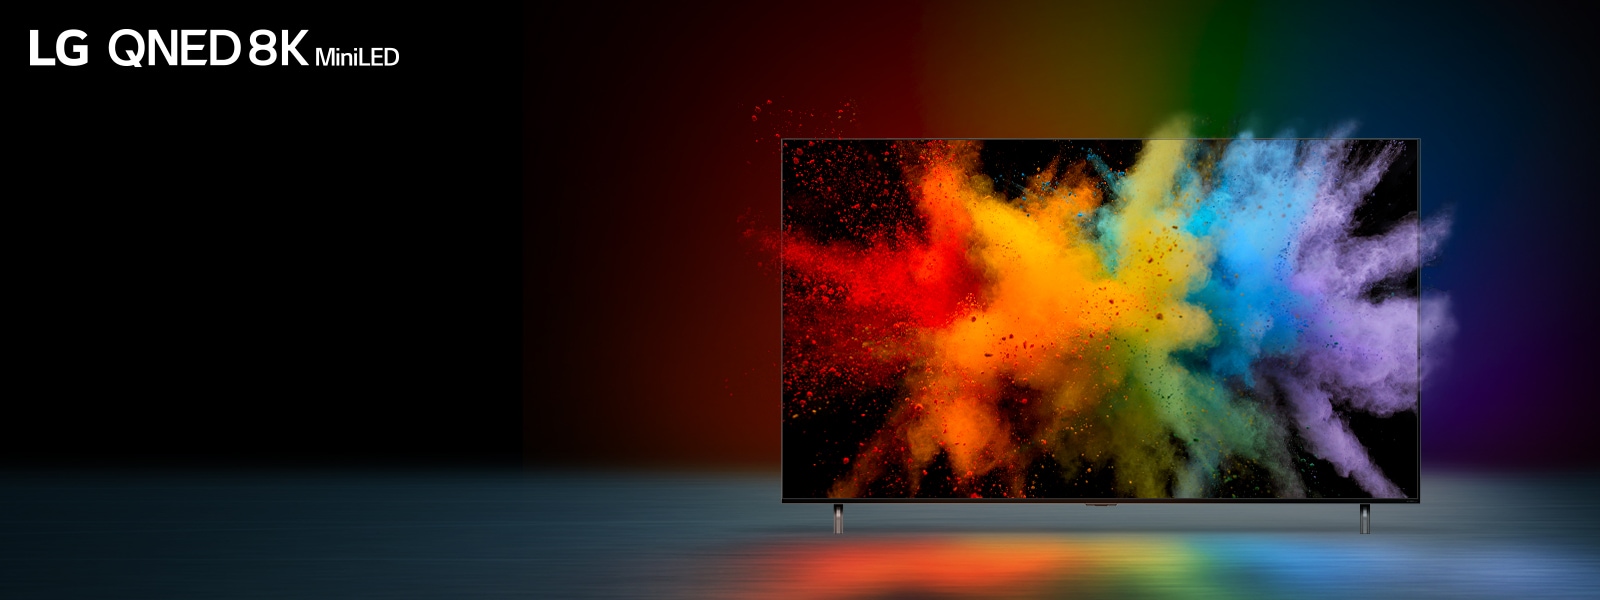 Le téléviseur est posé dans un endroit sombre. La poudre de couleur explose à l’intérieur de l’écran de télévision.